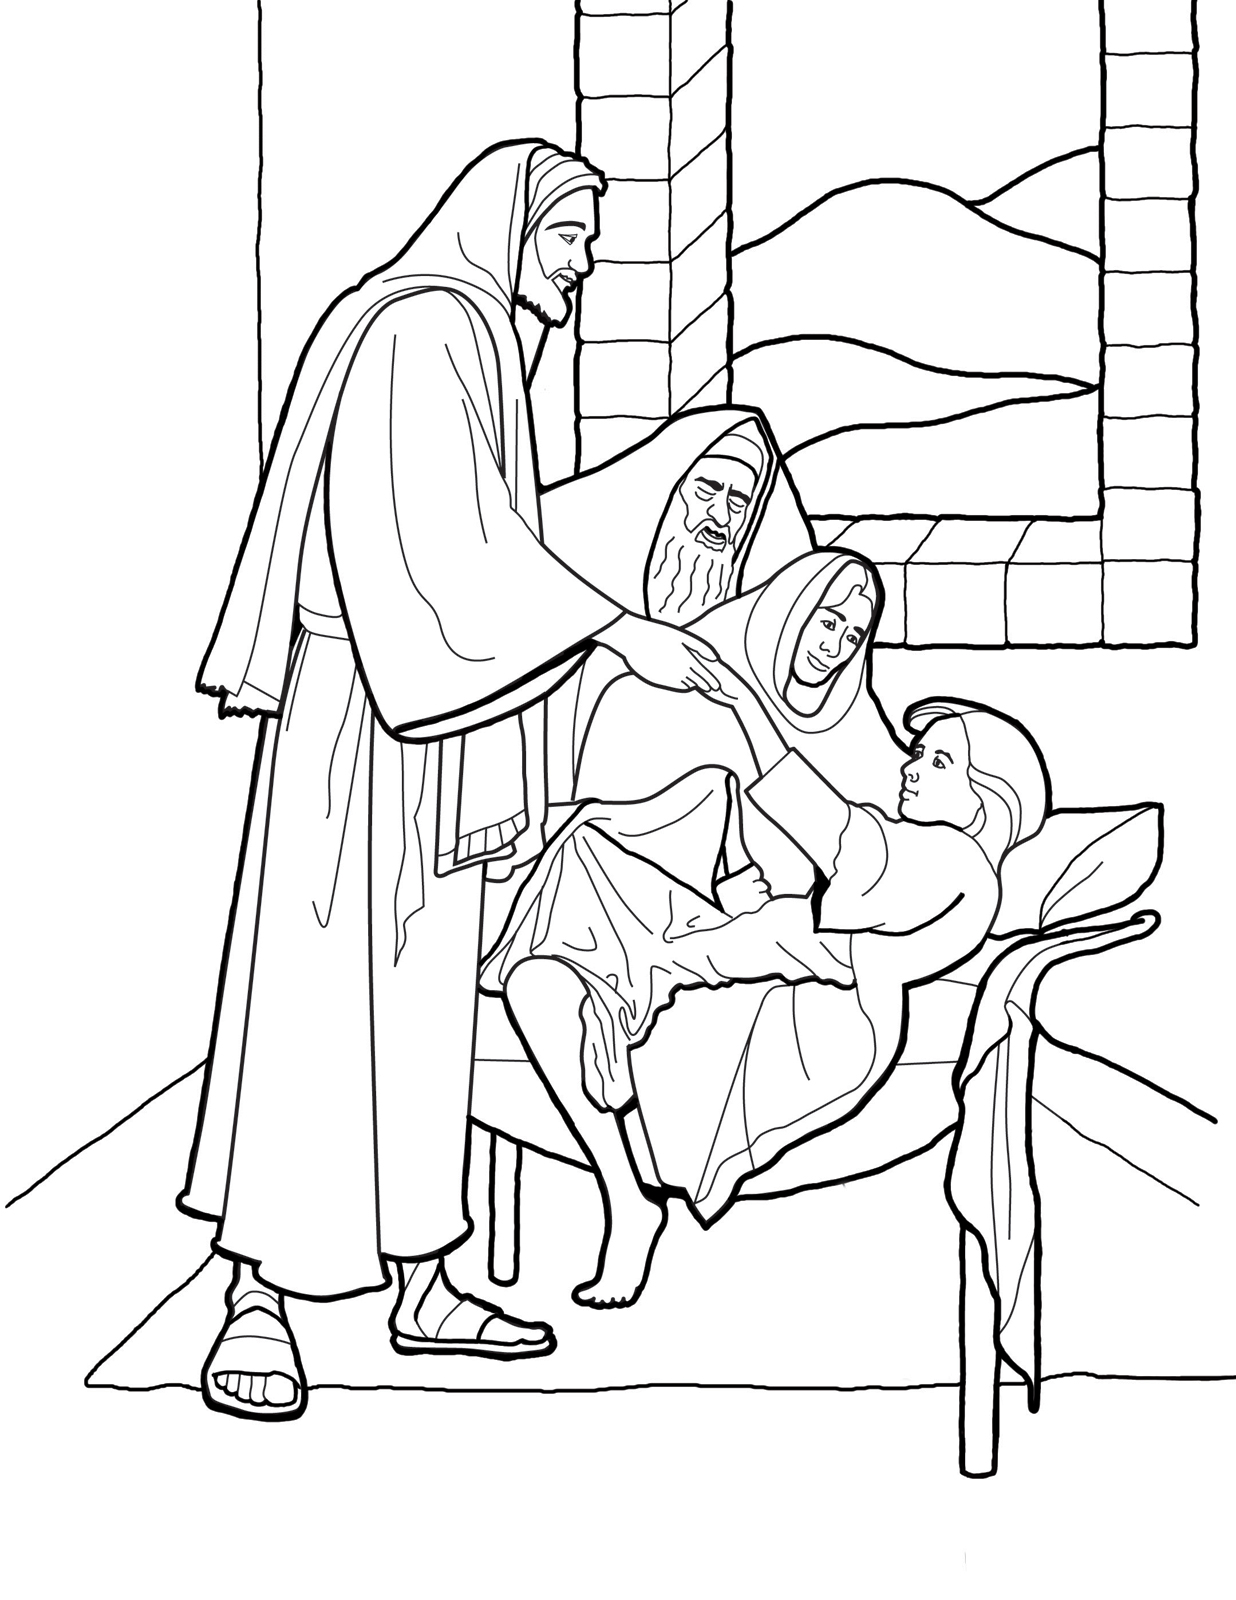 Ausmalbild: Christus weckt die Tochter des Jaïrus von den Toten auf